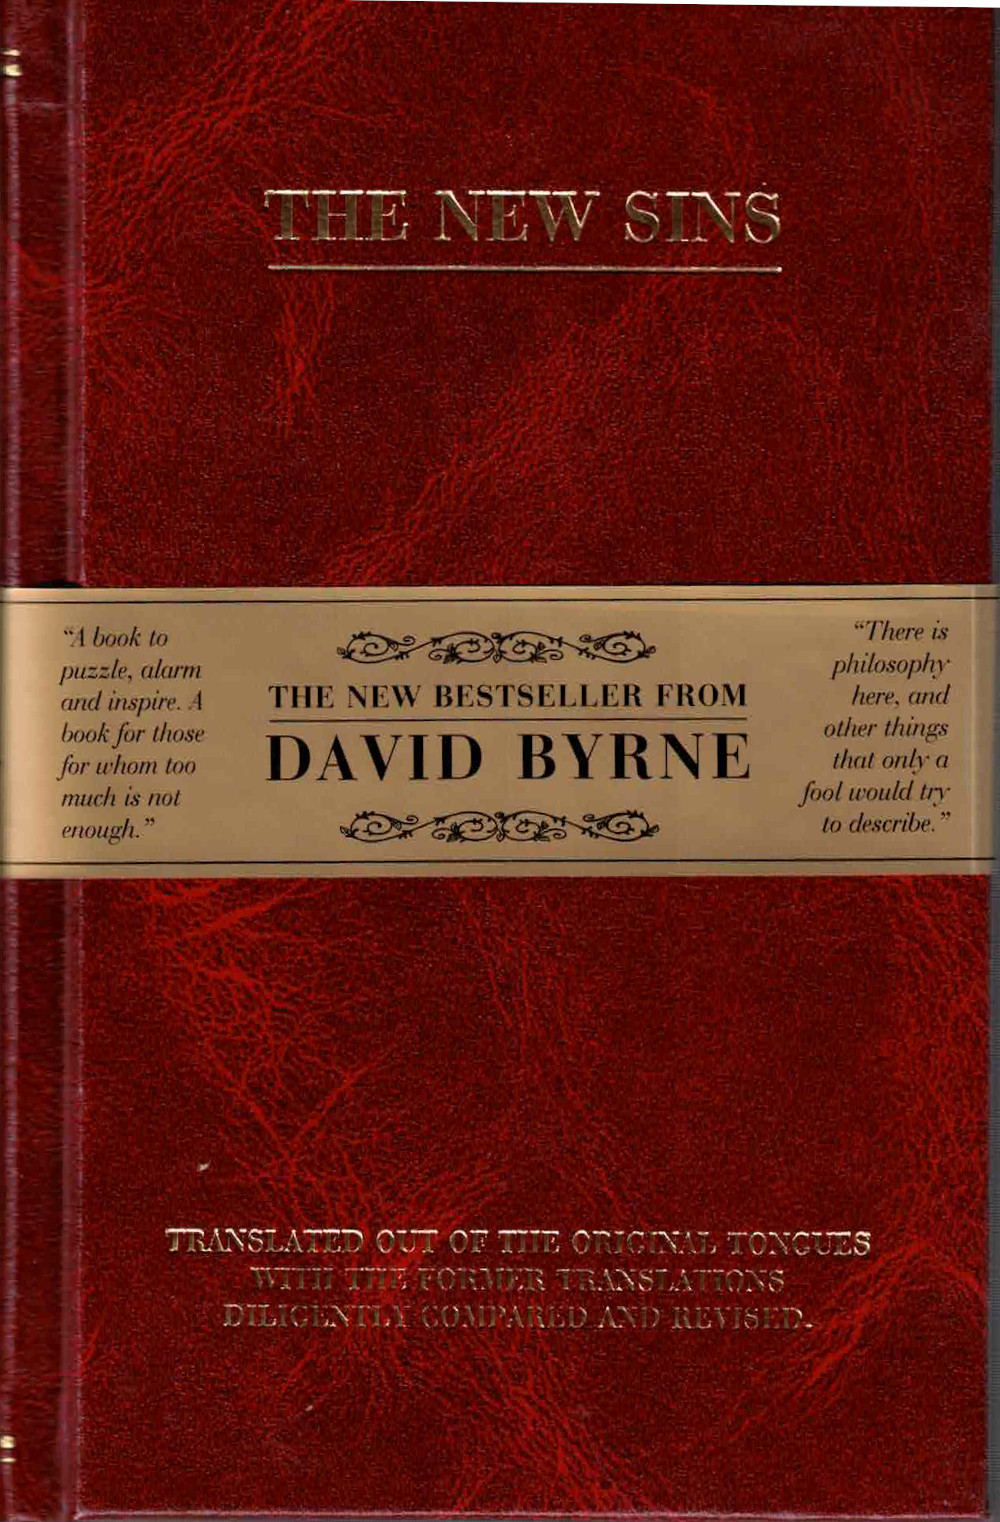 The New Sins / Los Nuevos Pecados - Byrne, David